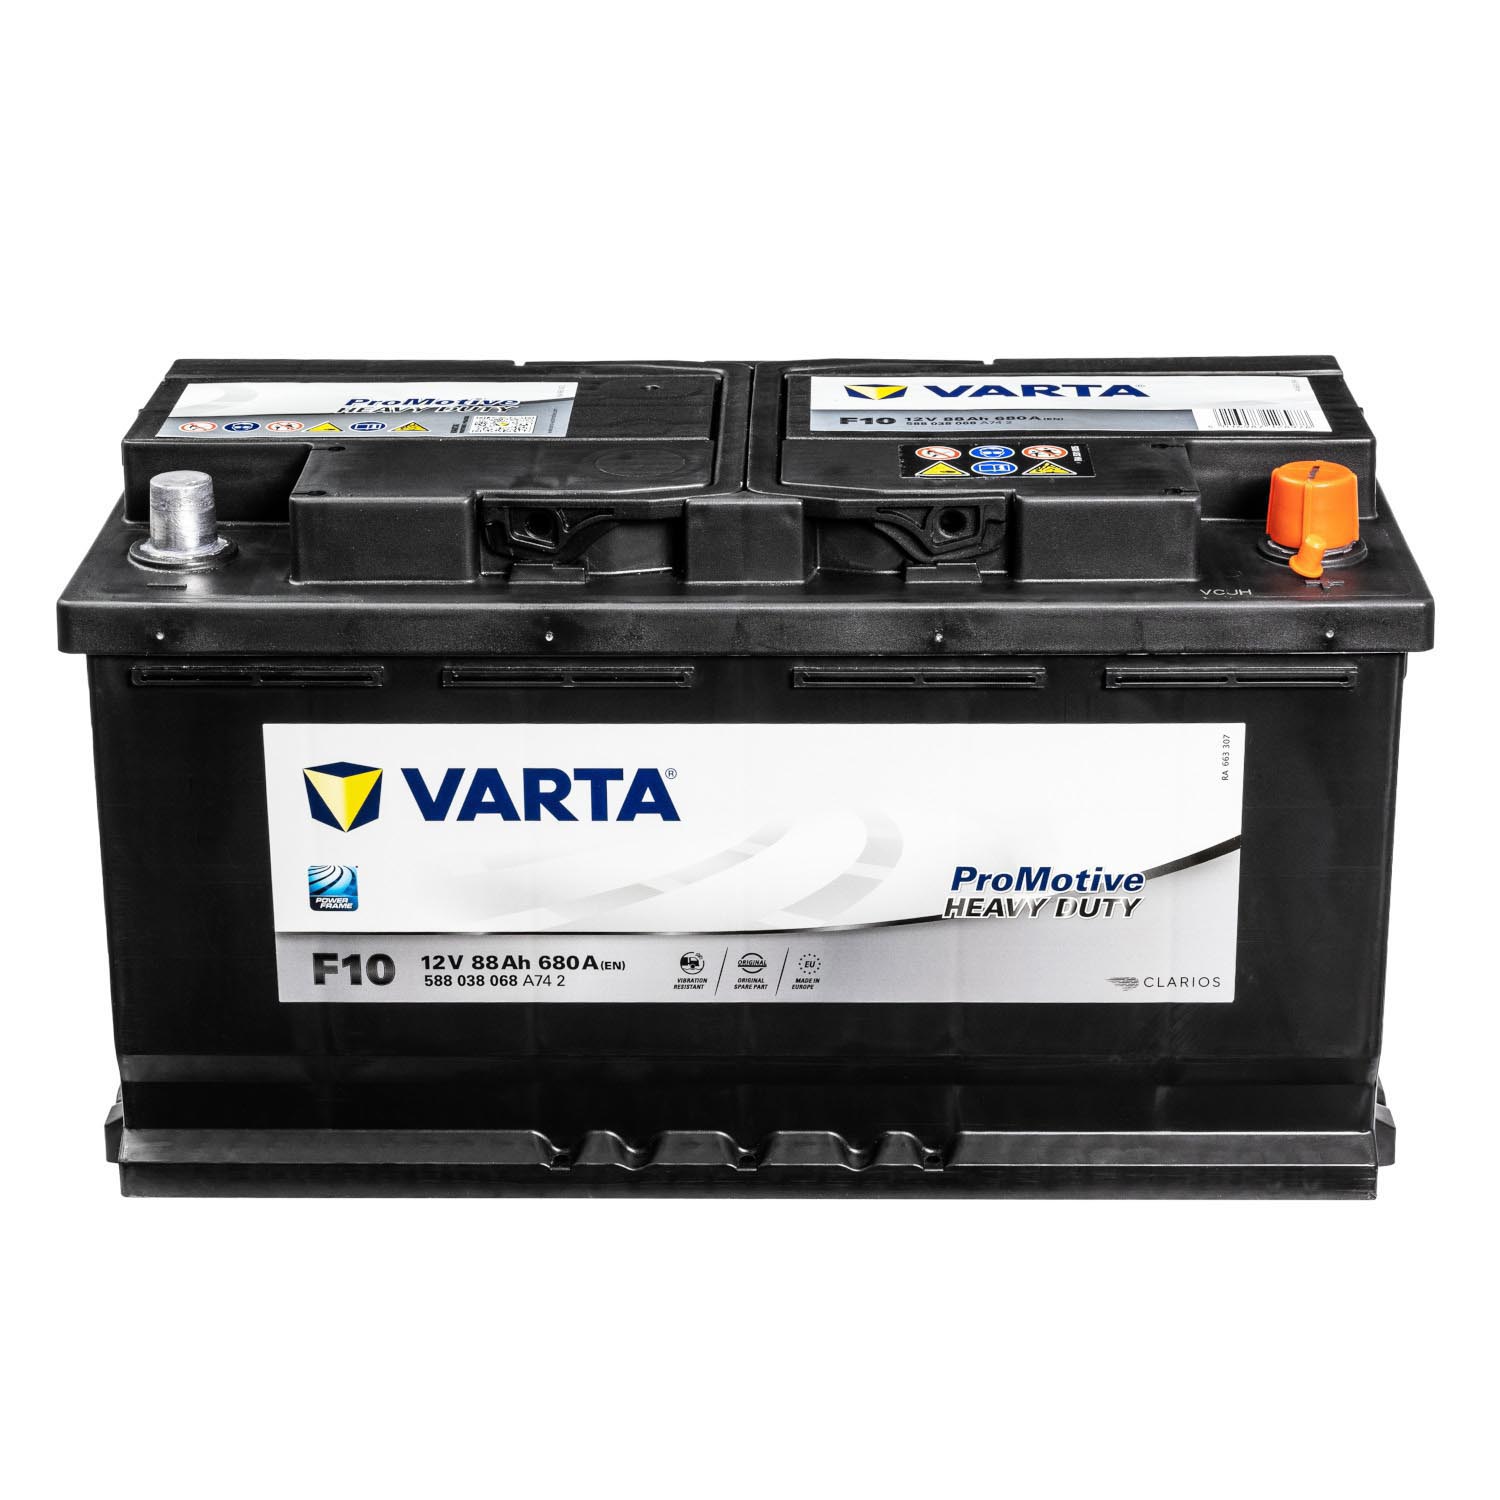 VARTA, LKW-Teile24, VARTA Starterbatterie Promotive EFB 12V, 240 Ah /  1200 A, L x B x H 518 x 276 x 242 mm - LKW Ersatzteile beim Experten  bestellen